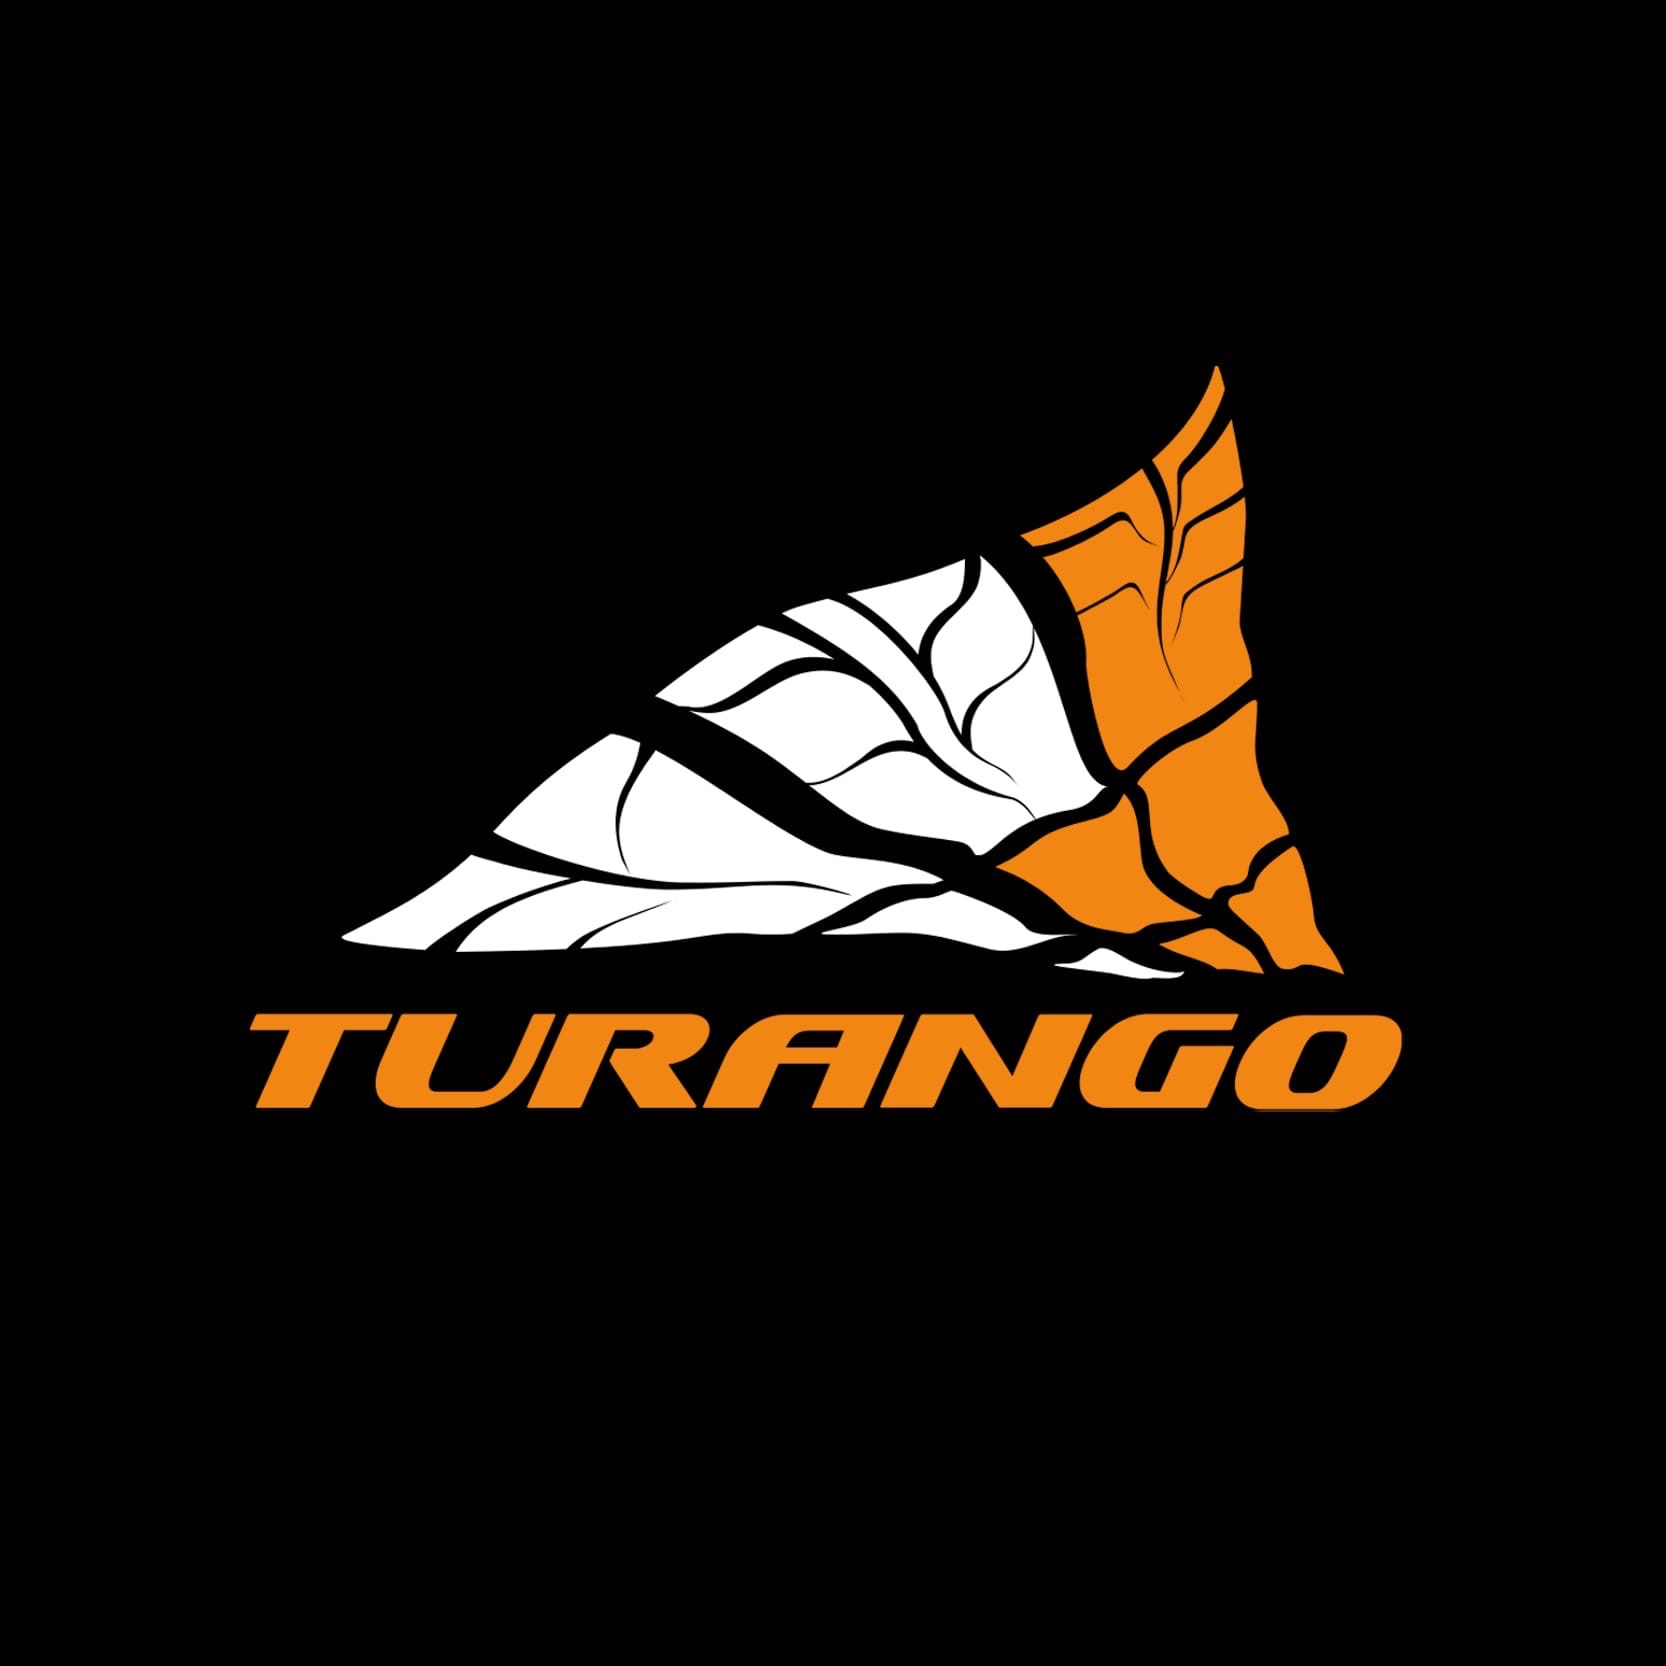 фото: логотип шинного центра "Туранго"